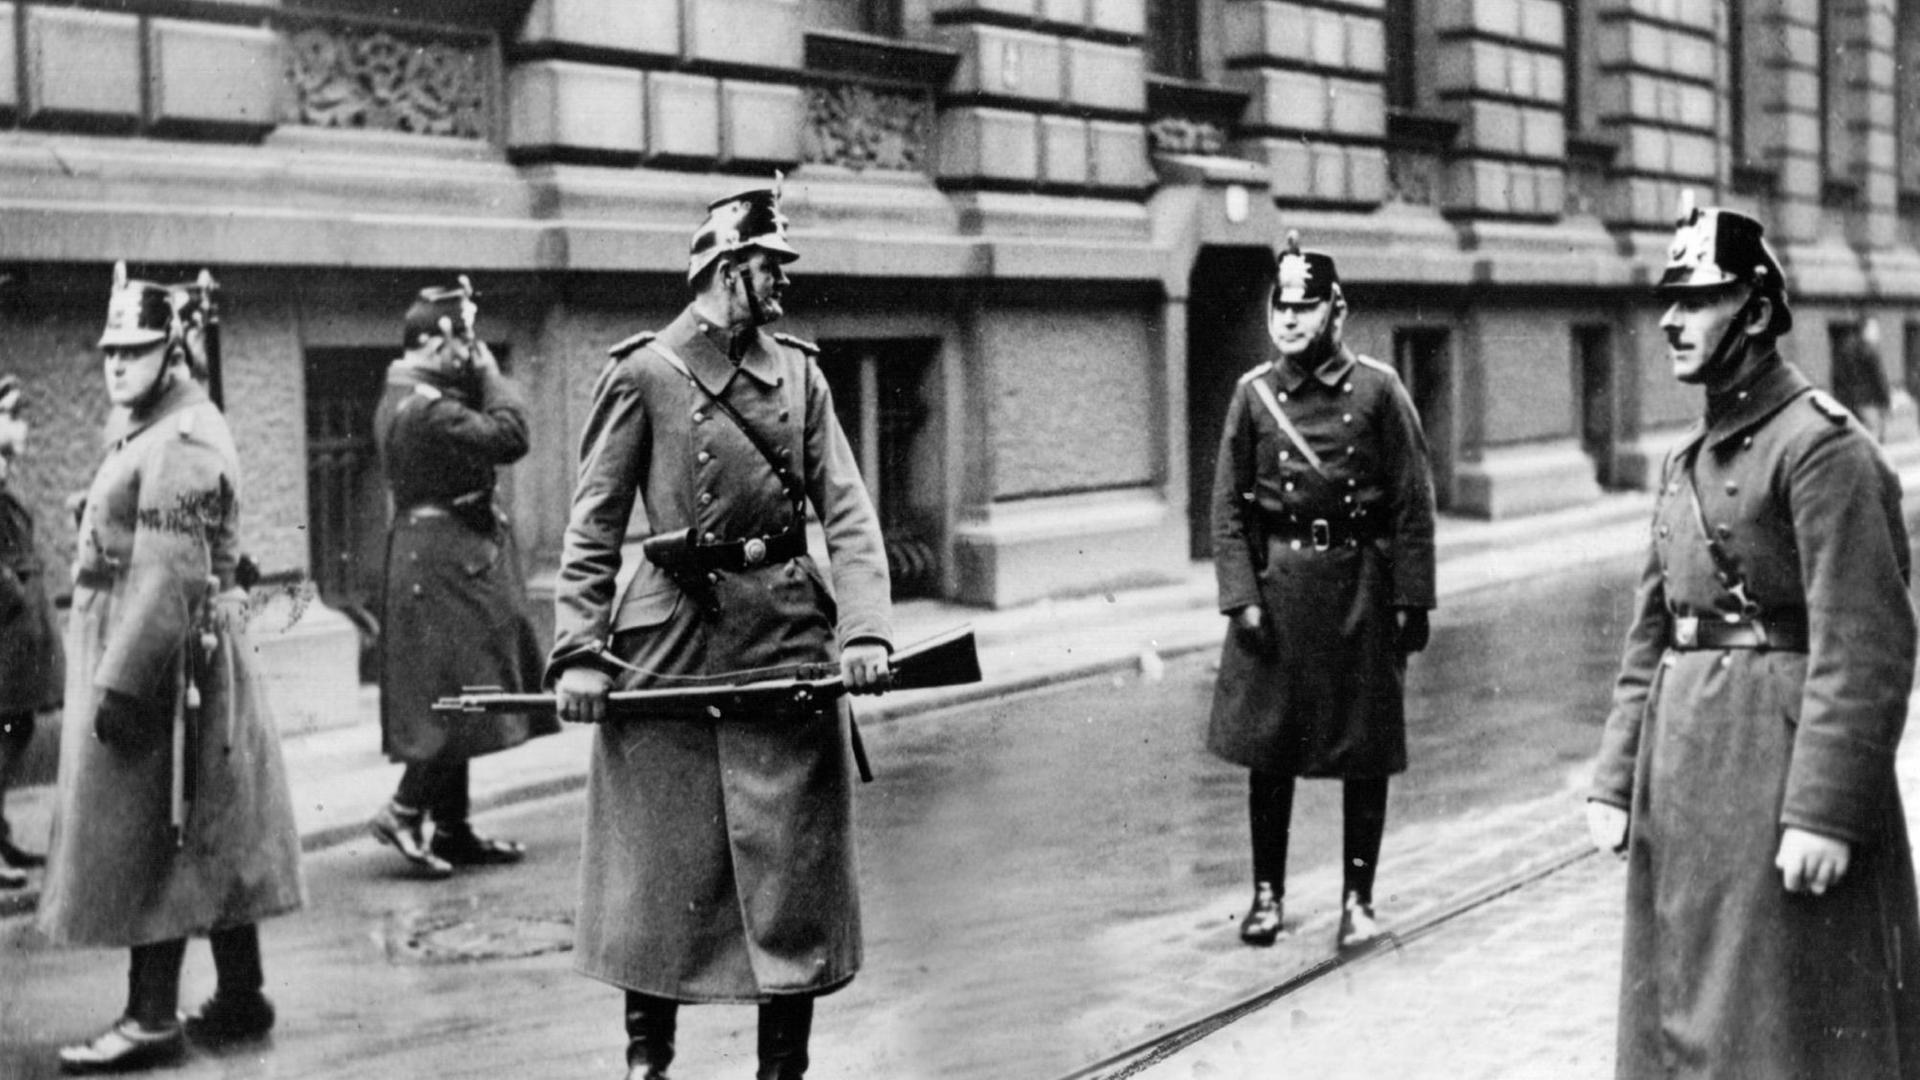 Polizisten im Jahr 1933 in den Straßen Berlins.